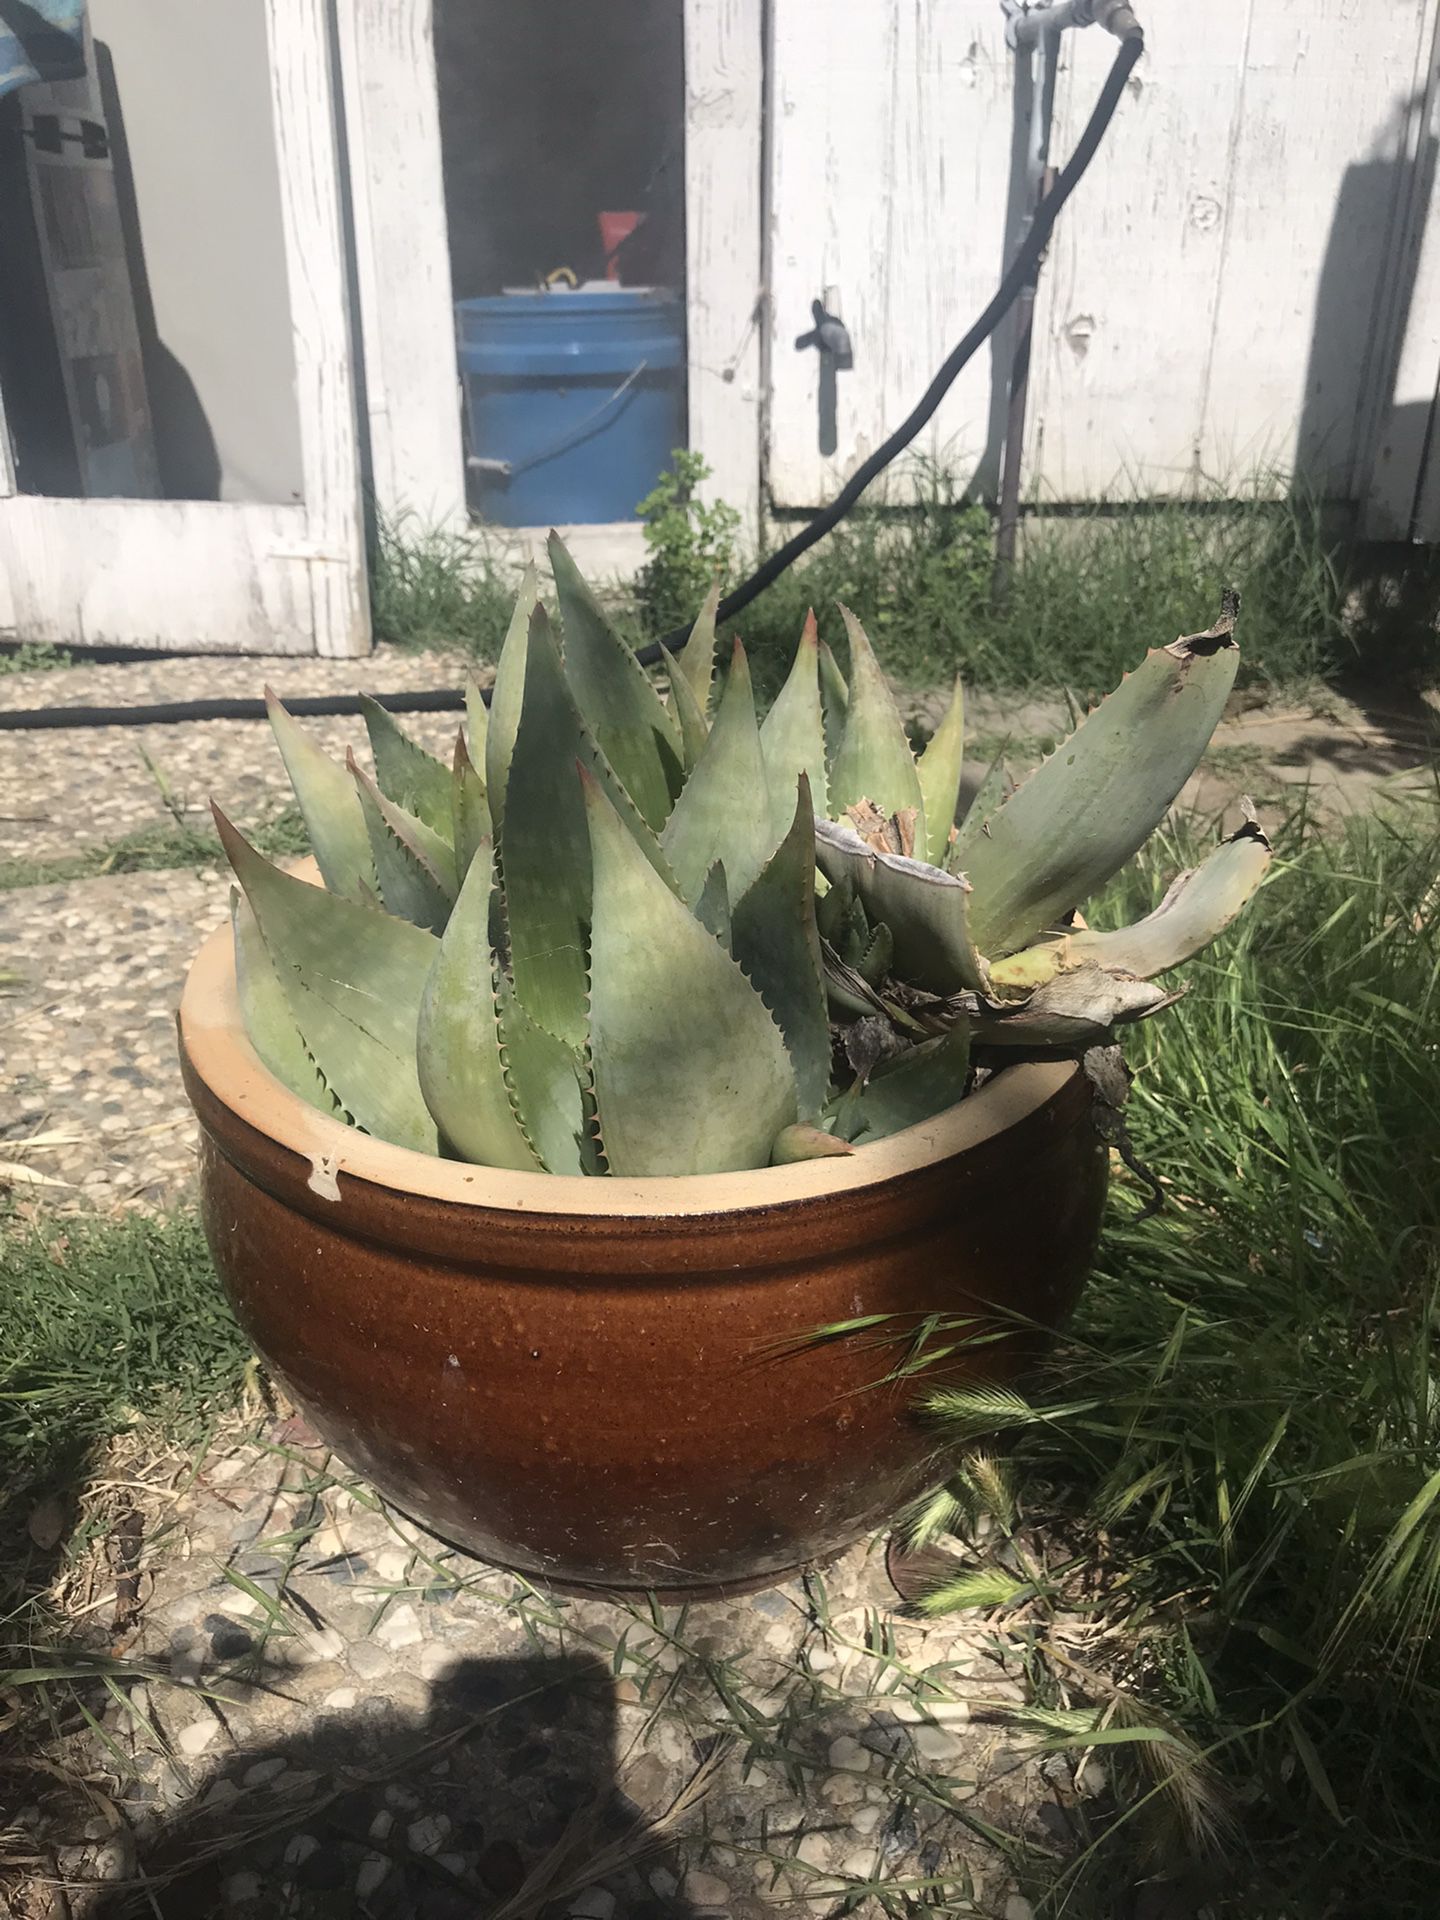 Succulent With Large Pot